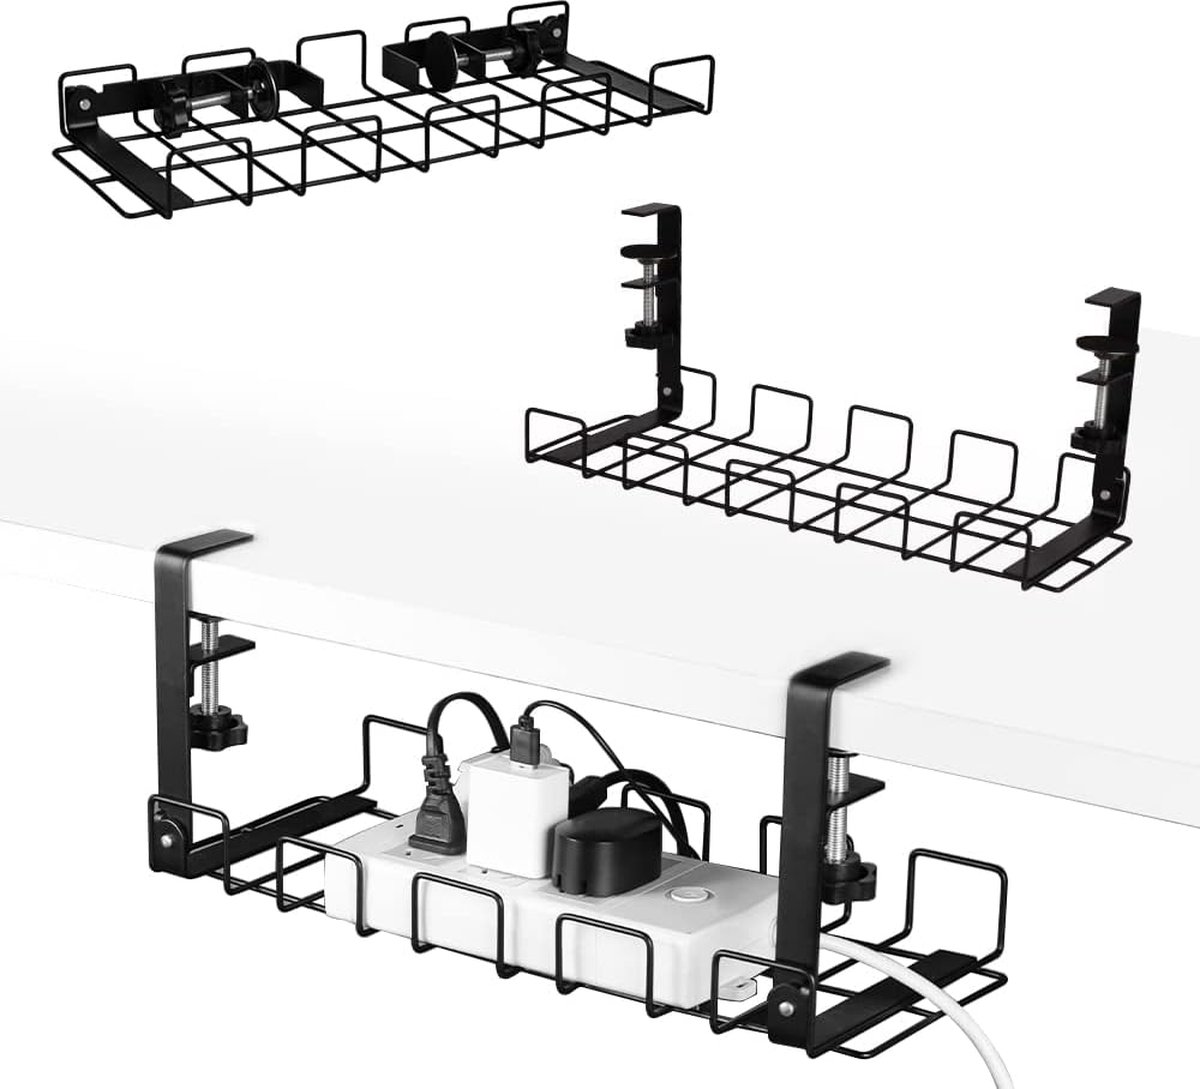 Kabelgoot voor bureau, 40 cm, 2 stuks, stabiele tafelkabelhouder voor kabelordening, metalen kabelkuip onder bureau voor bureau, kantoor en keuken (zwart)